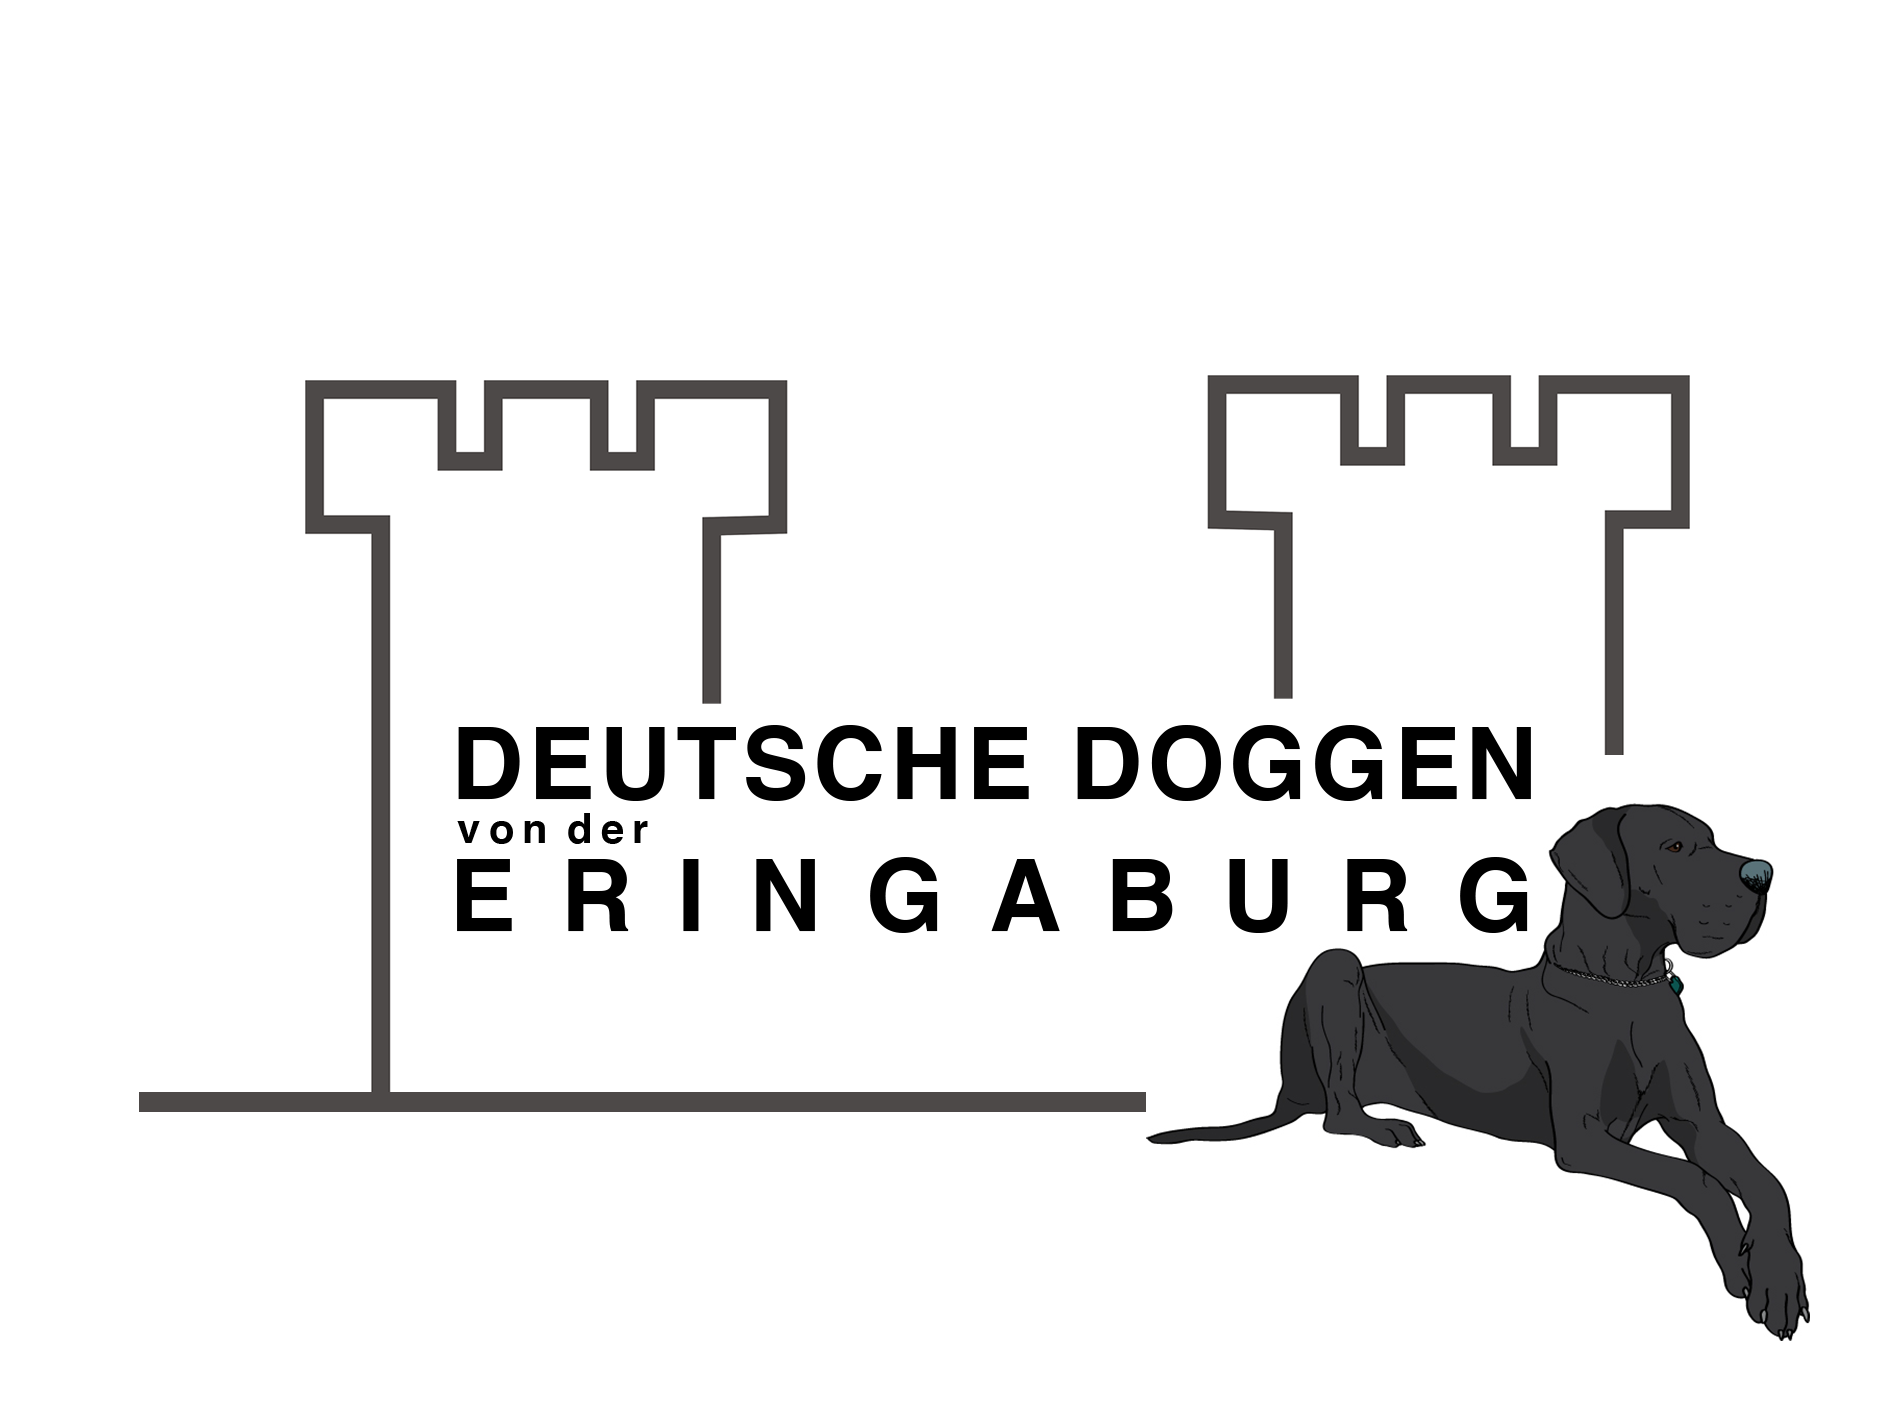 Deutschedoggen von der Eringaburg, Doggen, schwarz, blau , gelb, gestromt, Mamishaus, Friedhoff